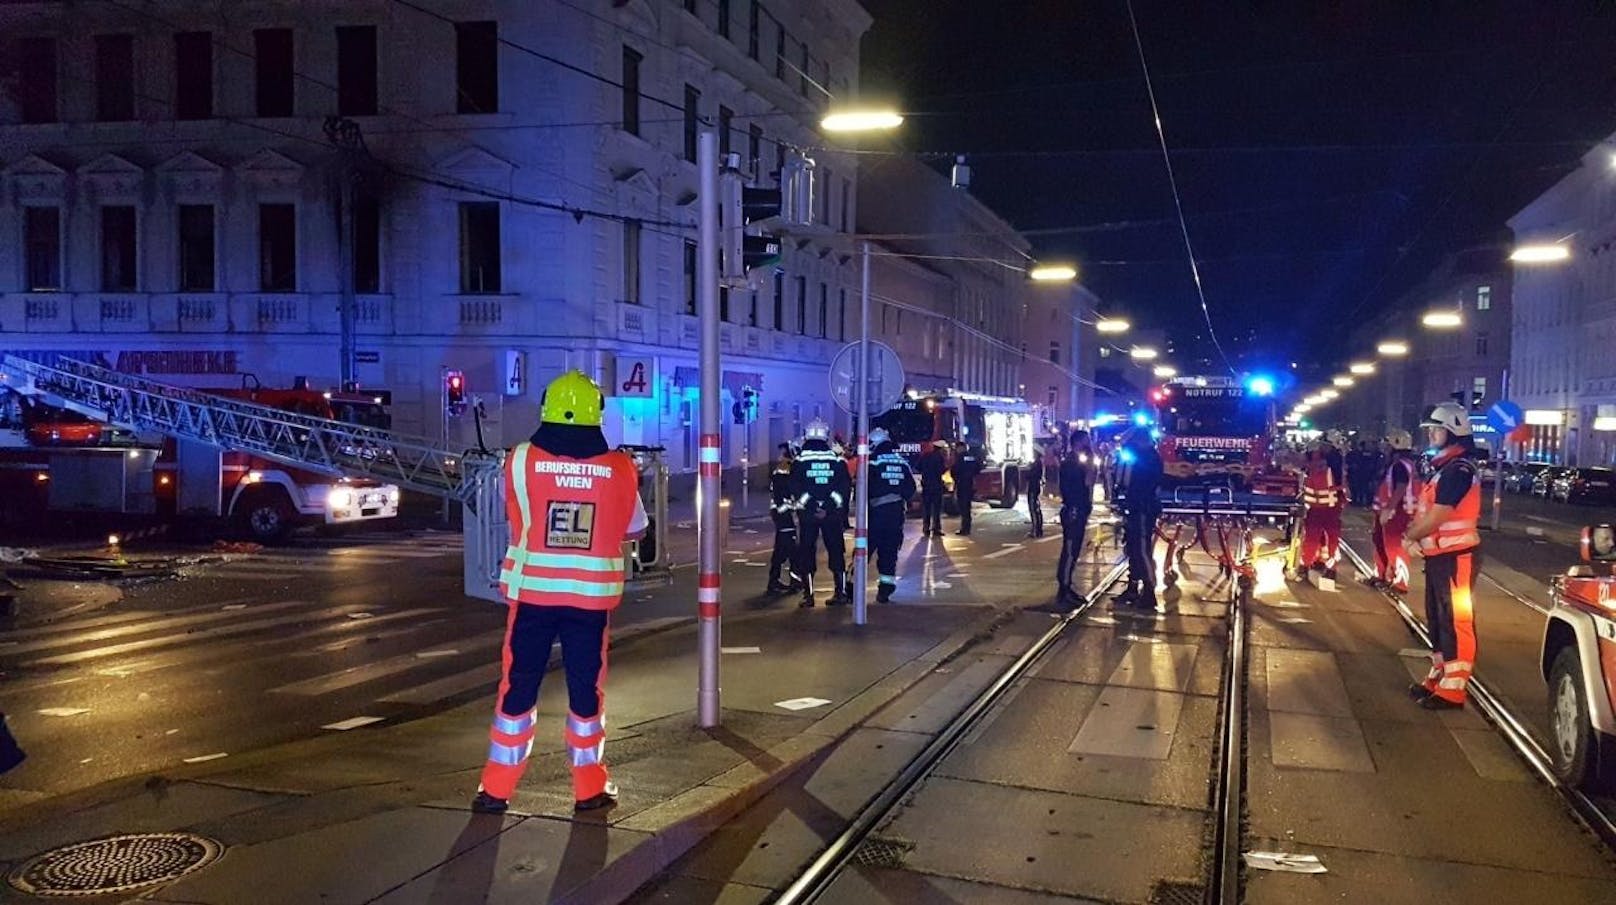 Schock in der Wiener Laxenburger Straße Ecke Arthaberplatz: Ein Wohnhaus wurde durch eine Explosion erschüttert, fünf Menschen dabei verletzt (13. September 2017)